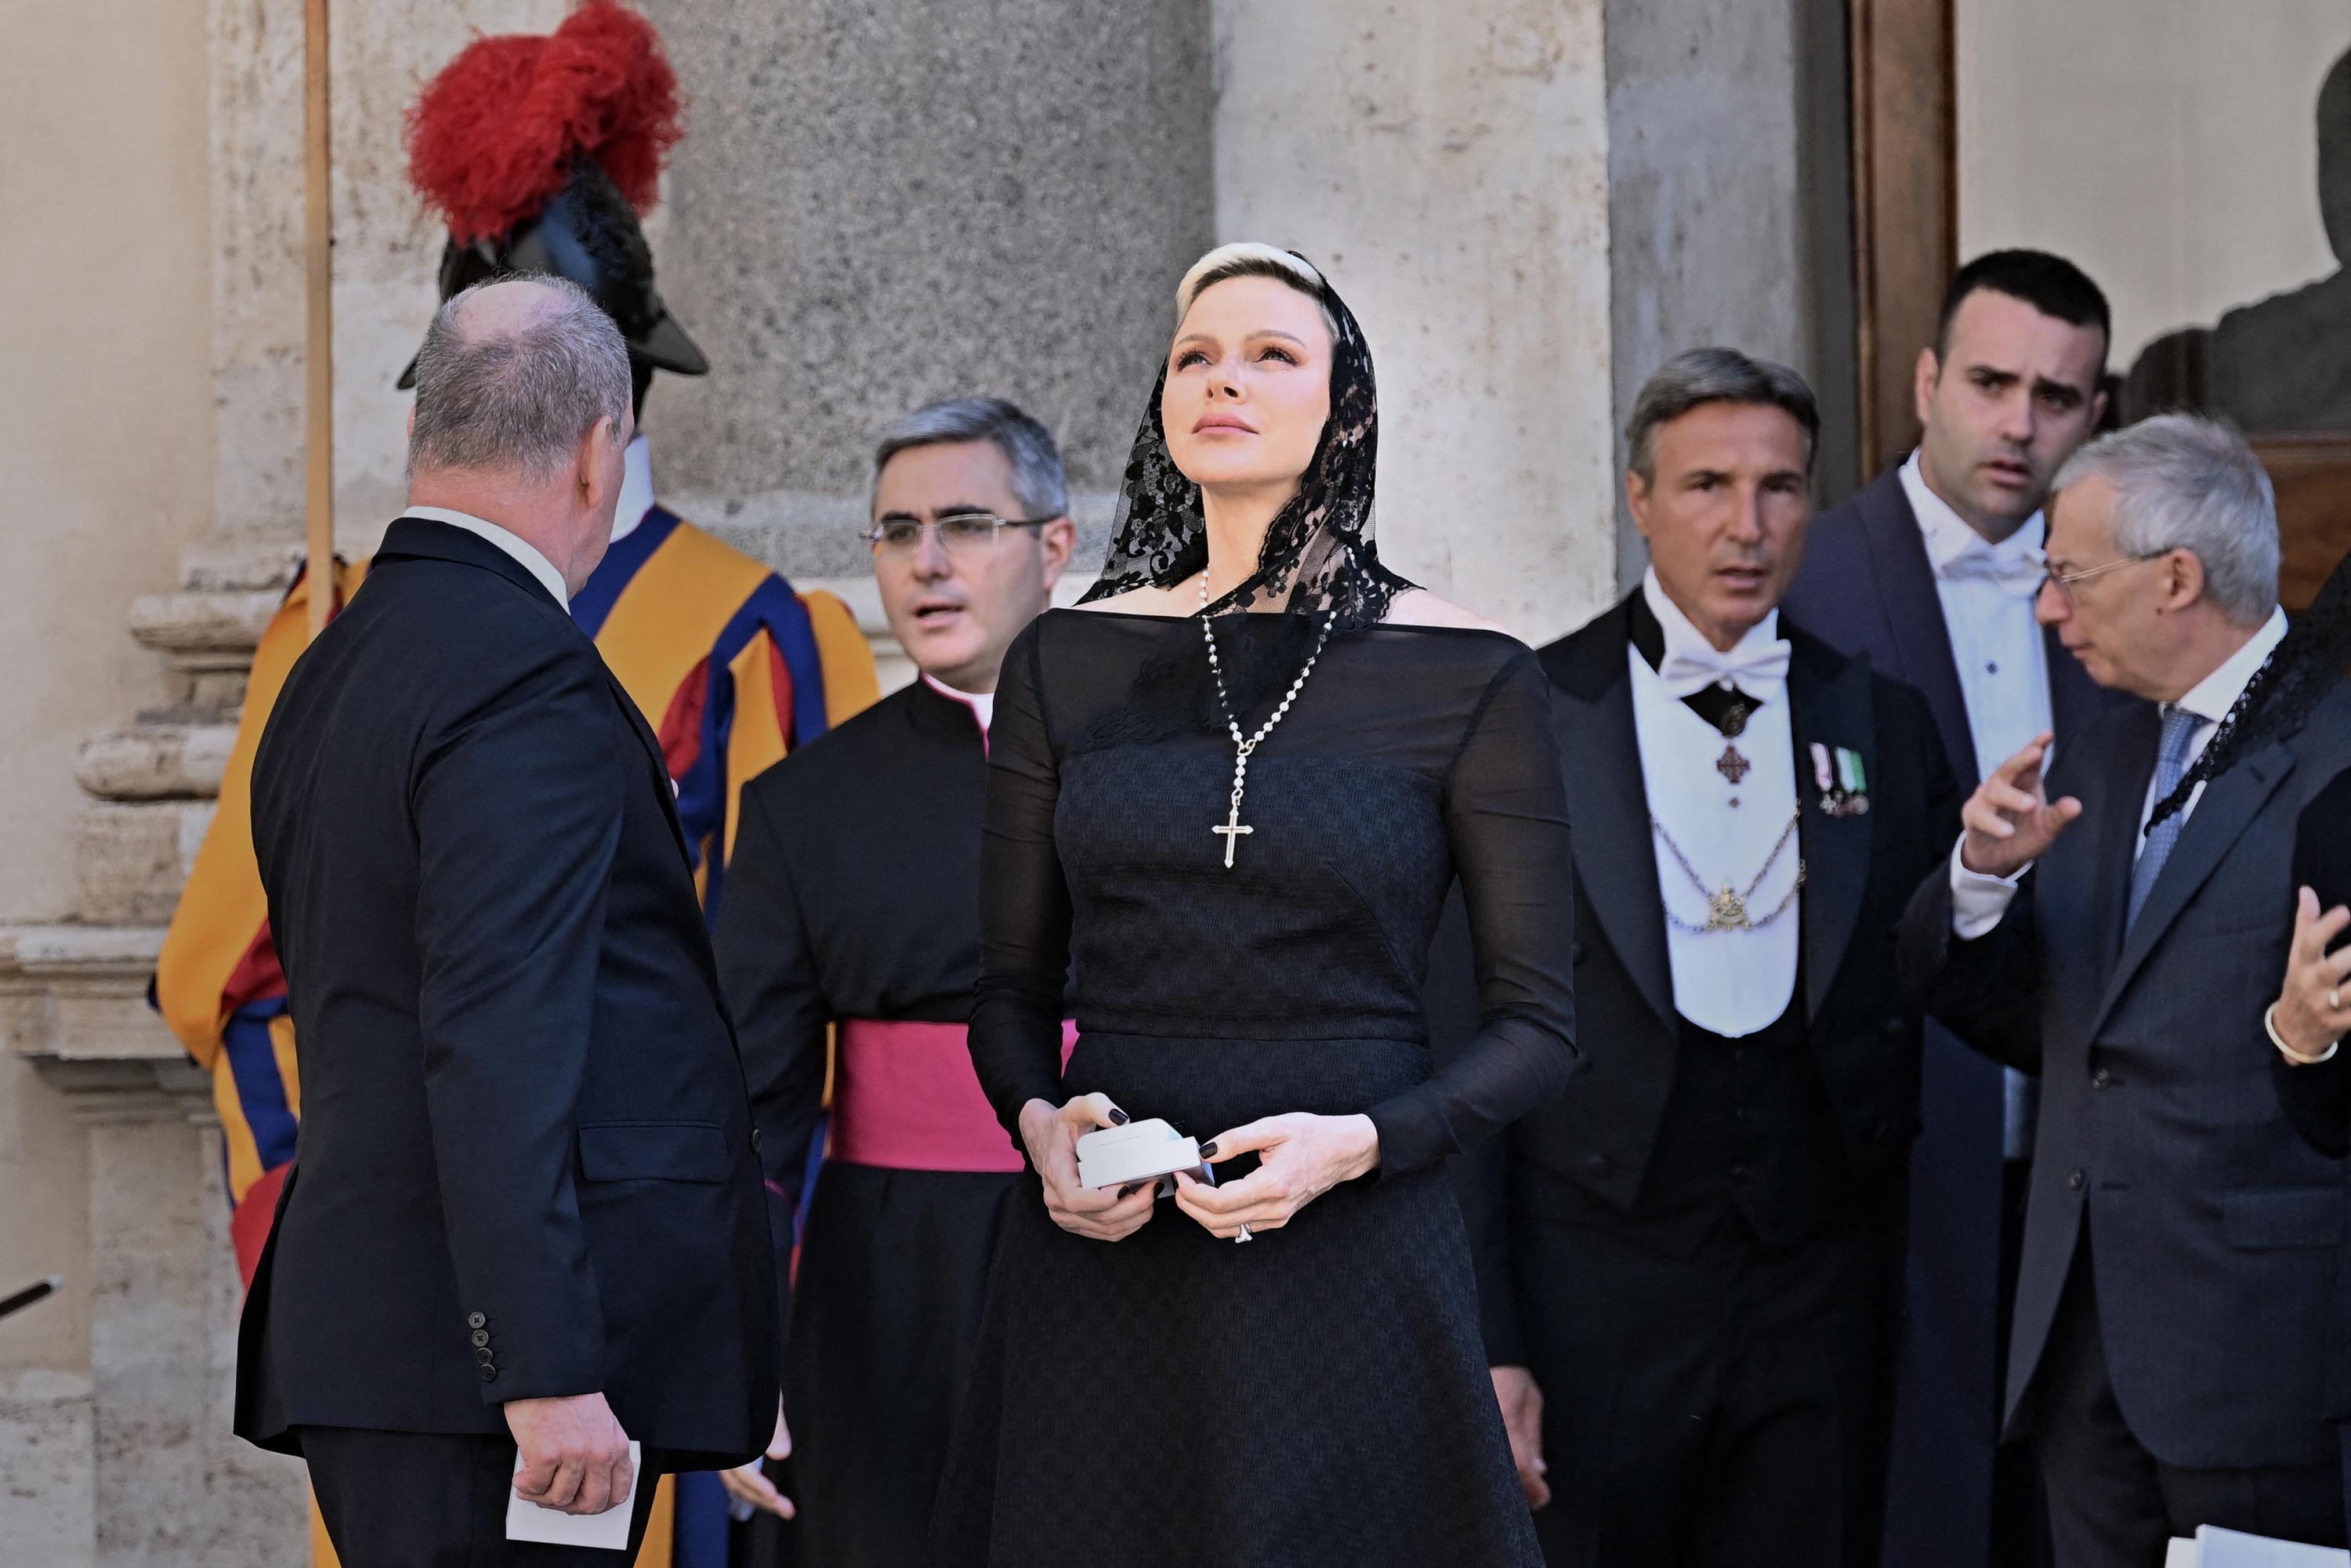 Mantille à dentelle et épaules dévêtues, Charlene de Monaco rencontre le pape François façon veuve noire